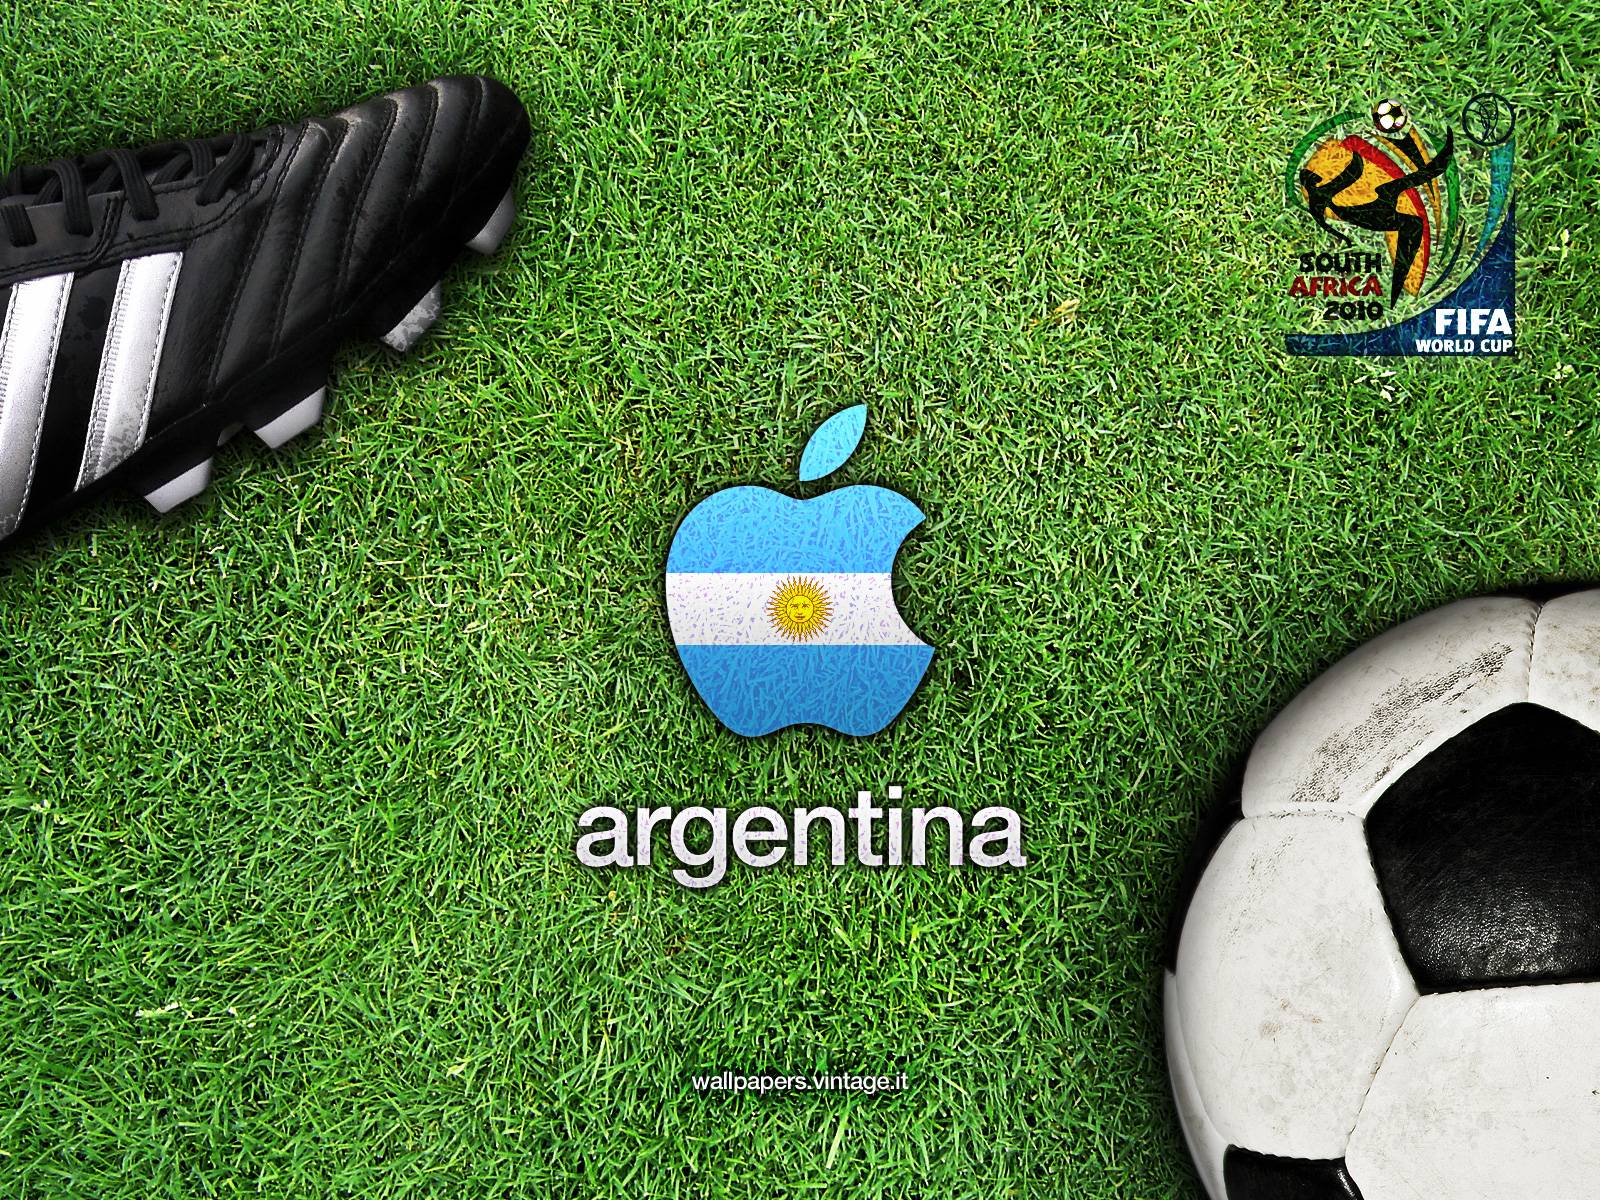 Argentina Fifa World Cup wallpaper Desktop HD iPad iPhone